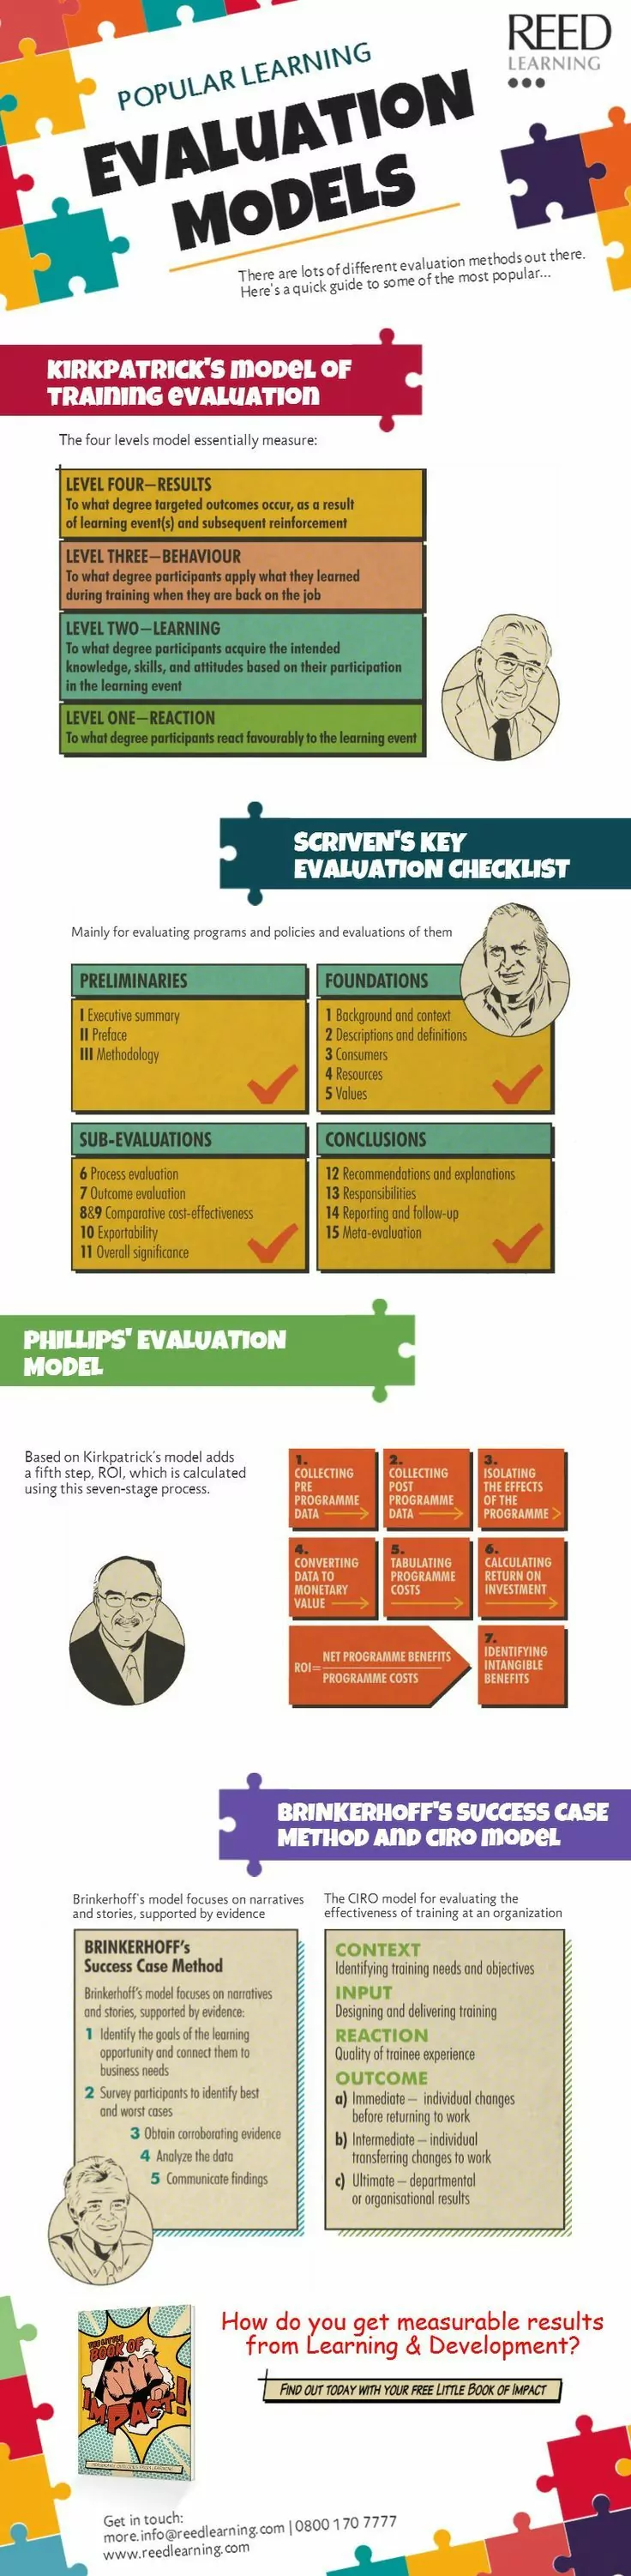 Popular learning evaluation models